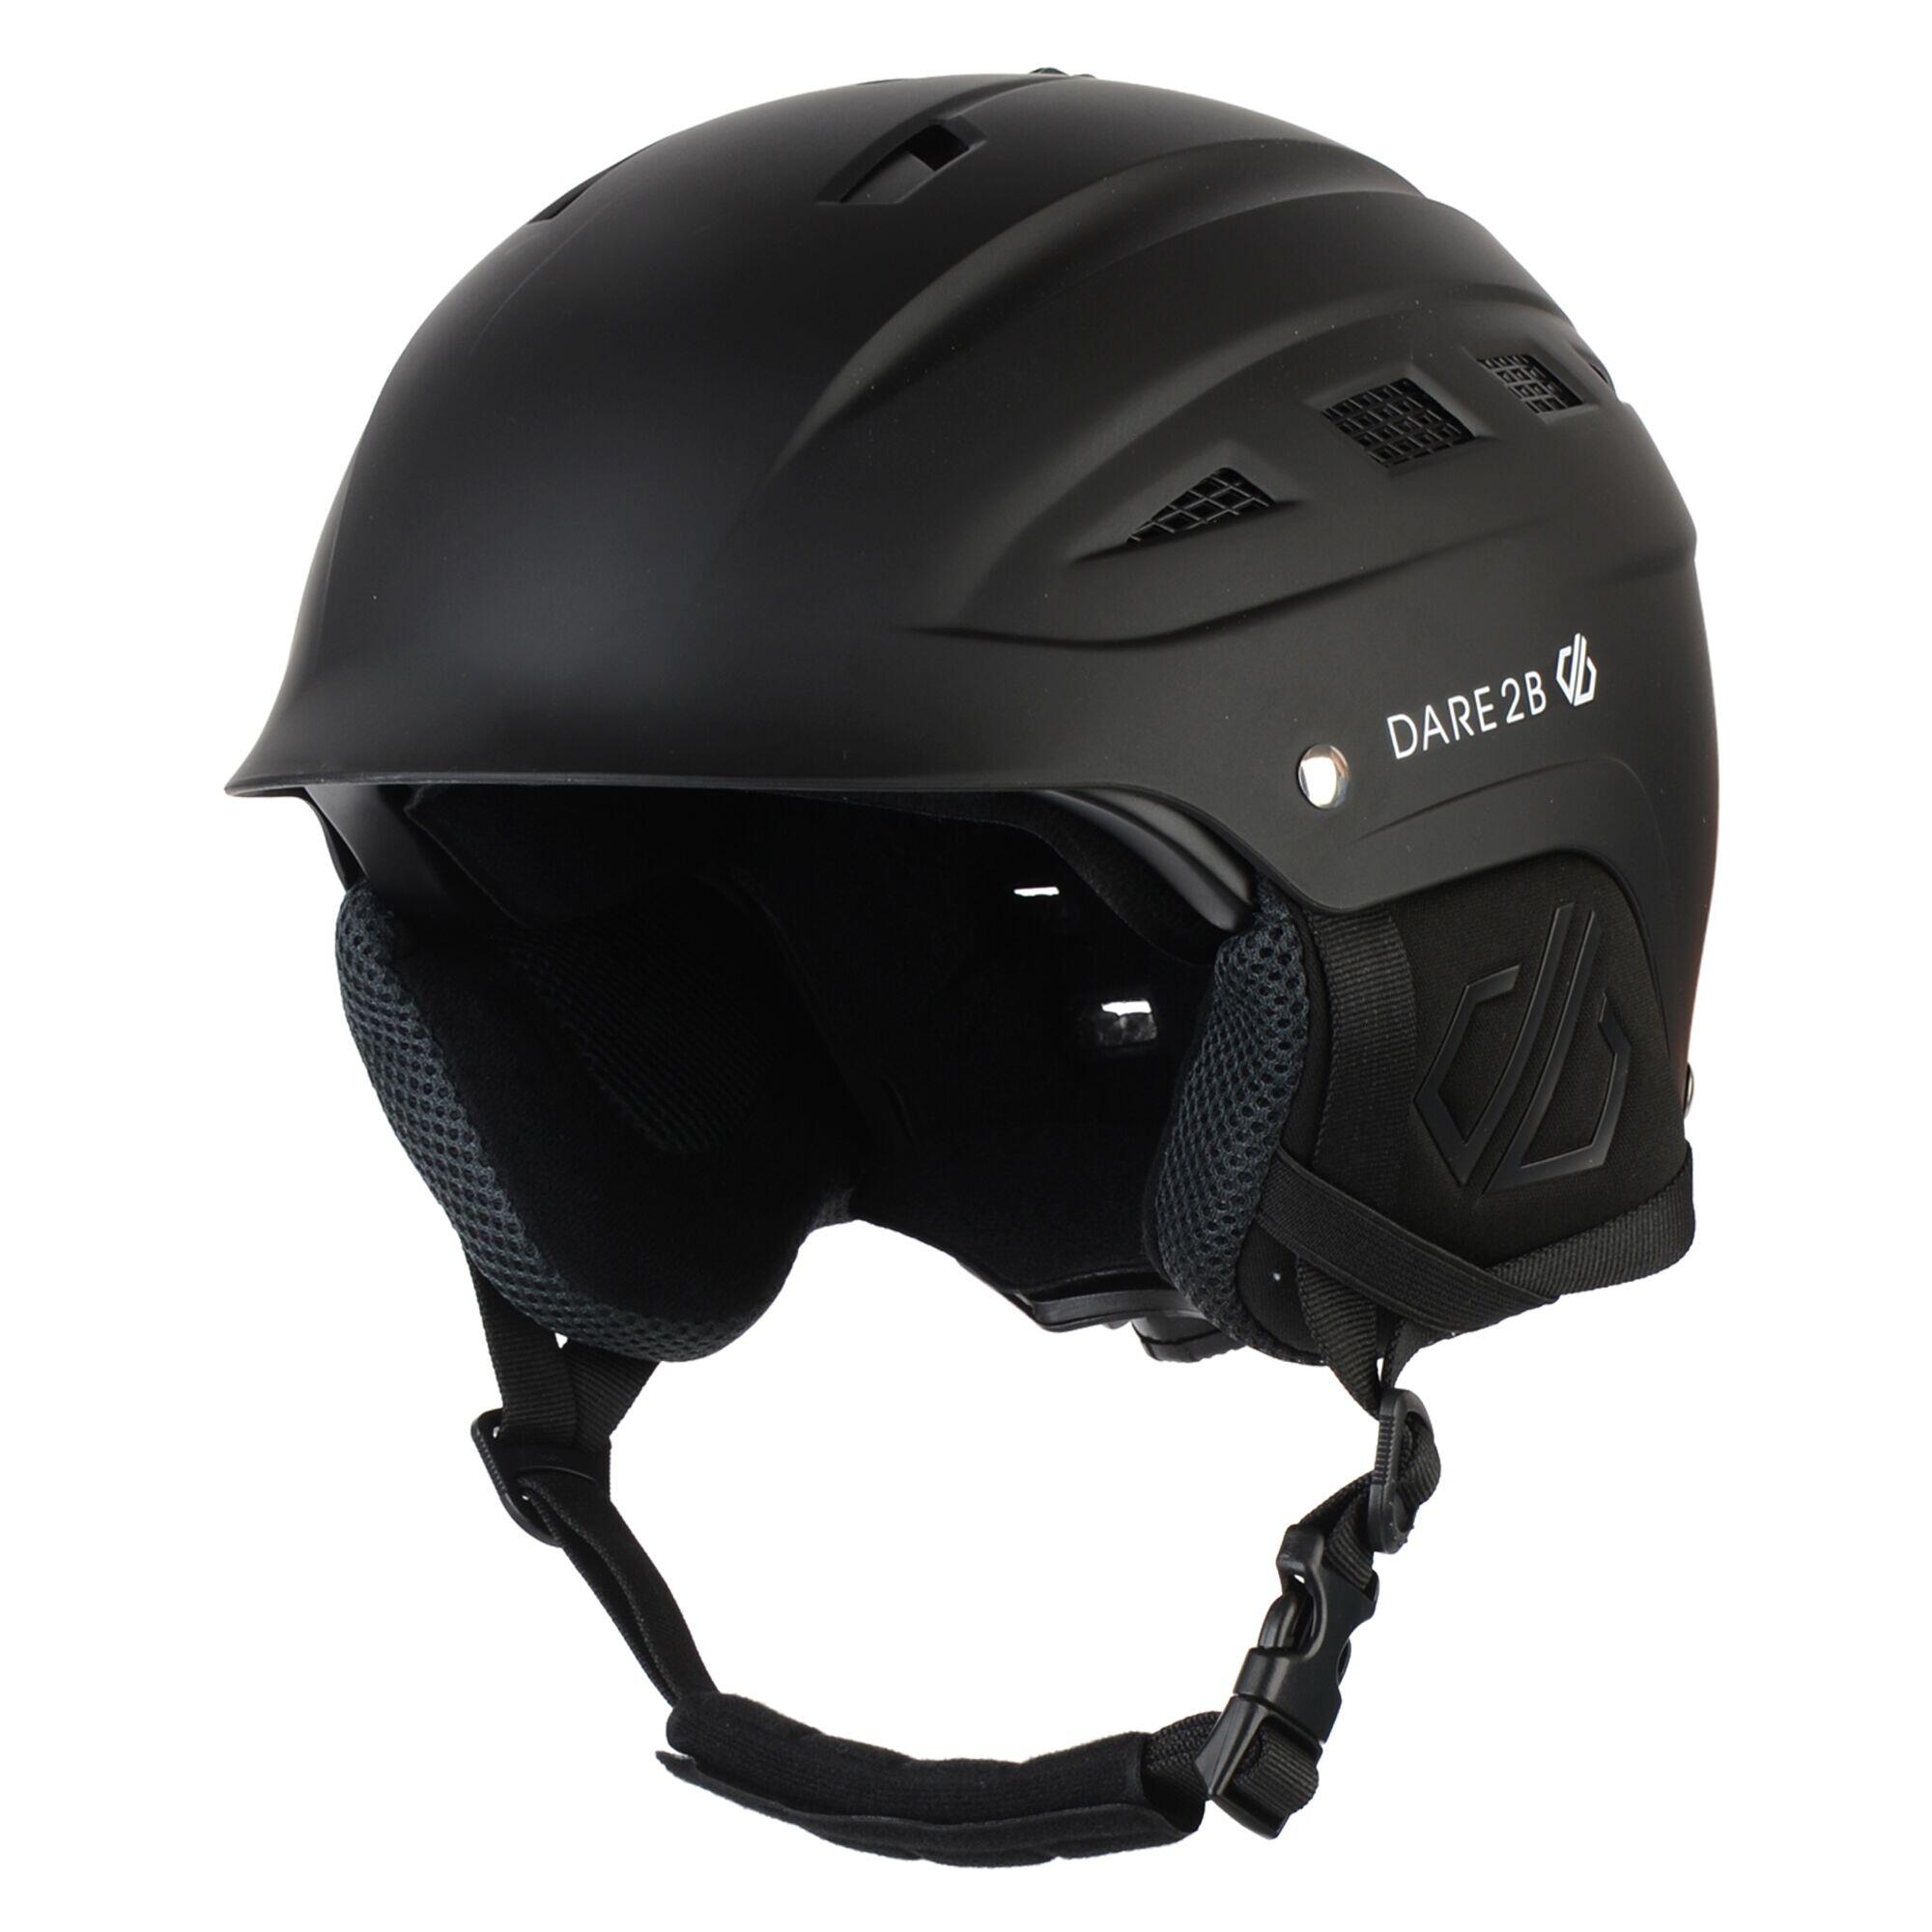 Cohere Kids' Ski Shock Absorbing Helmet - Black 2/5